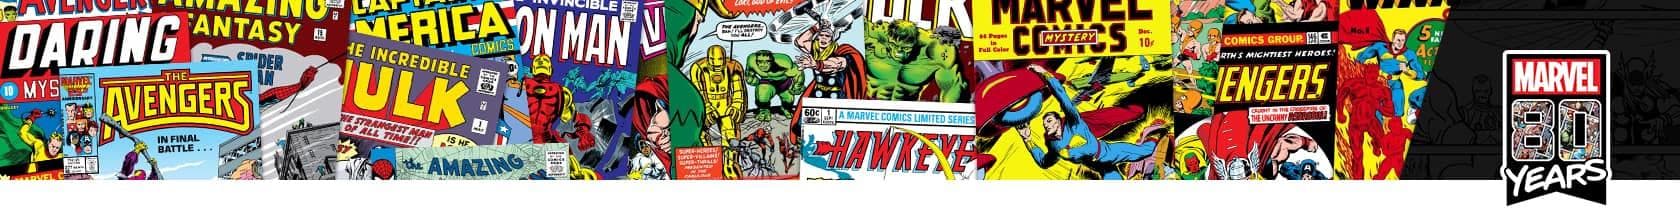 Marvel 80th Anniversary 2019 Header